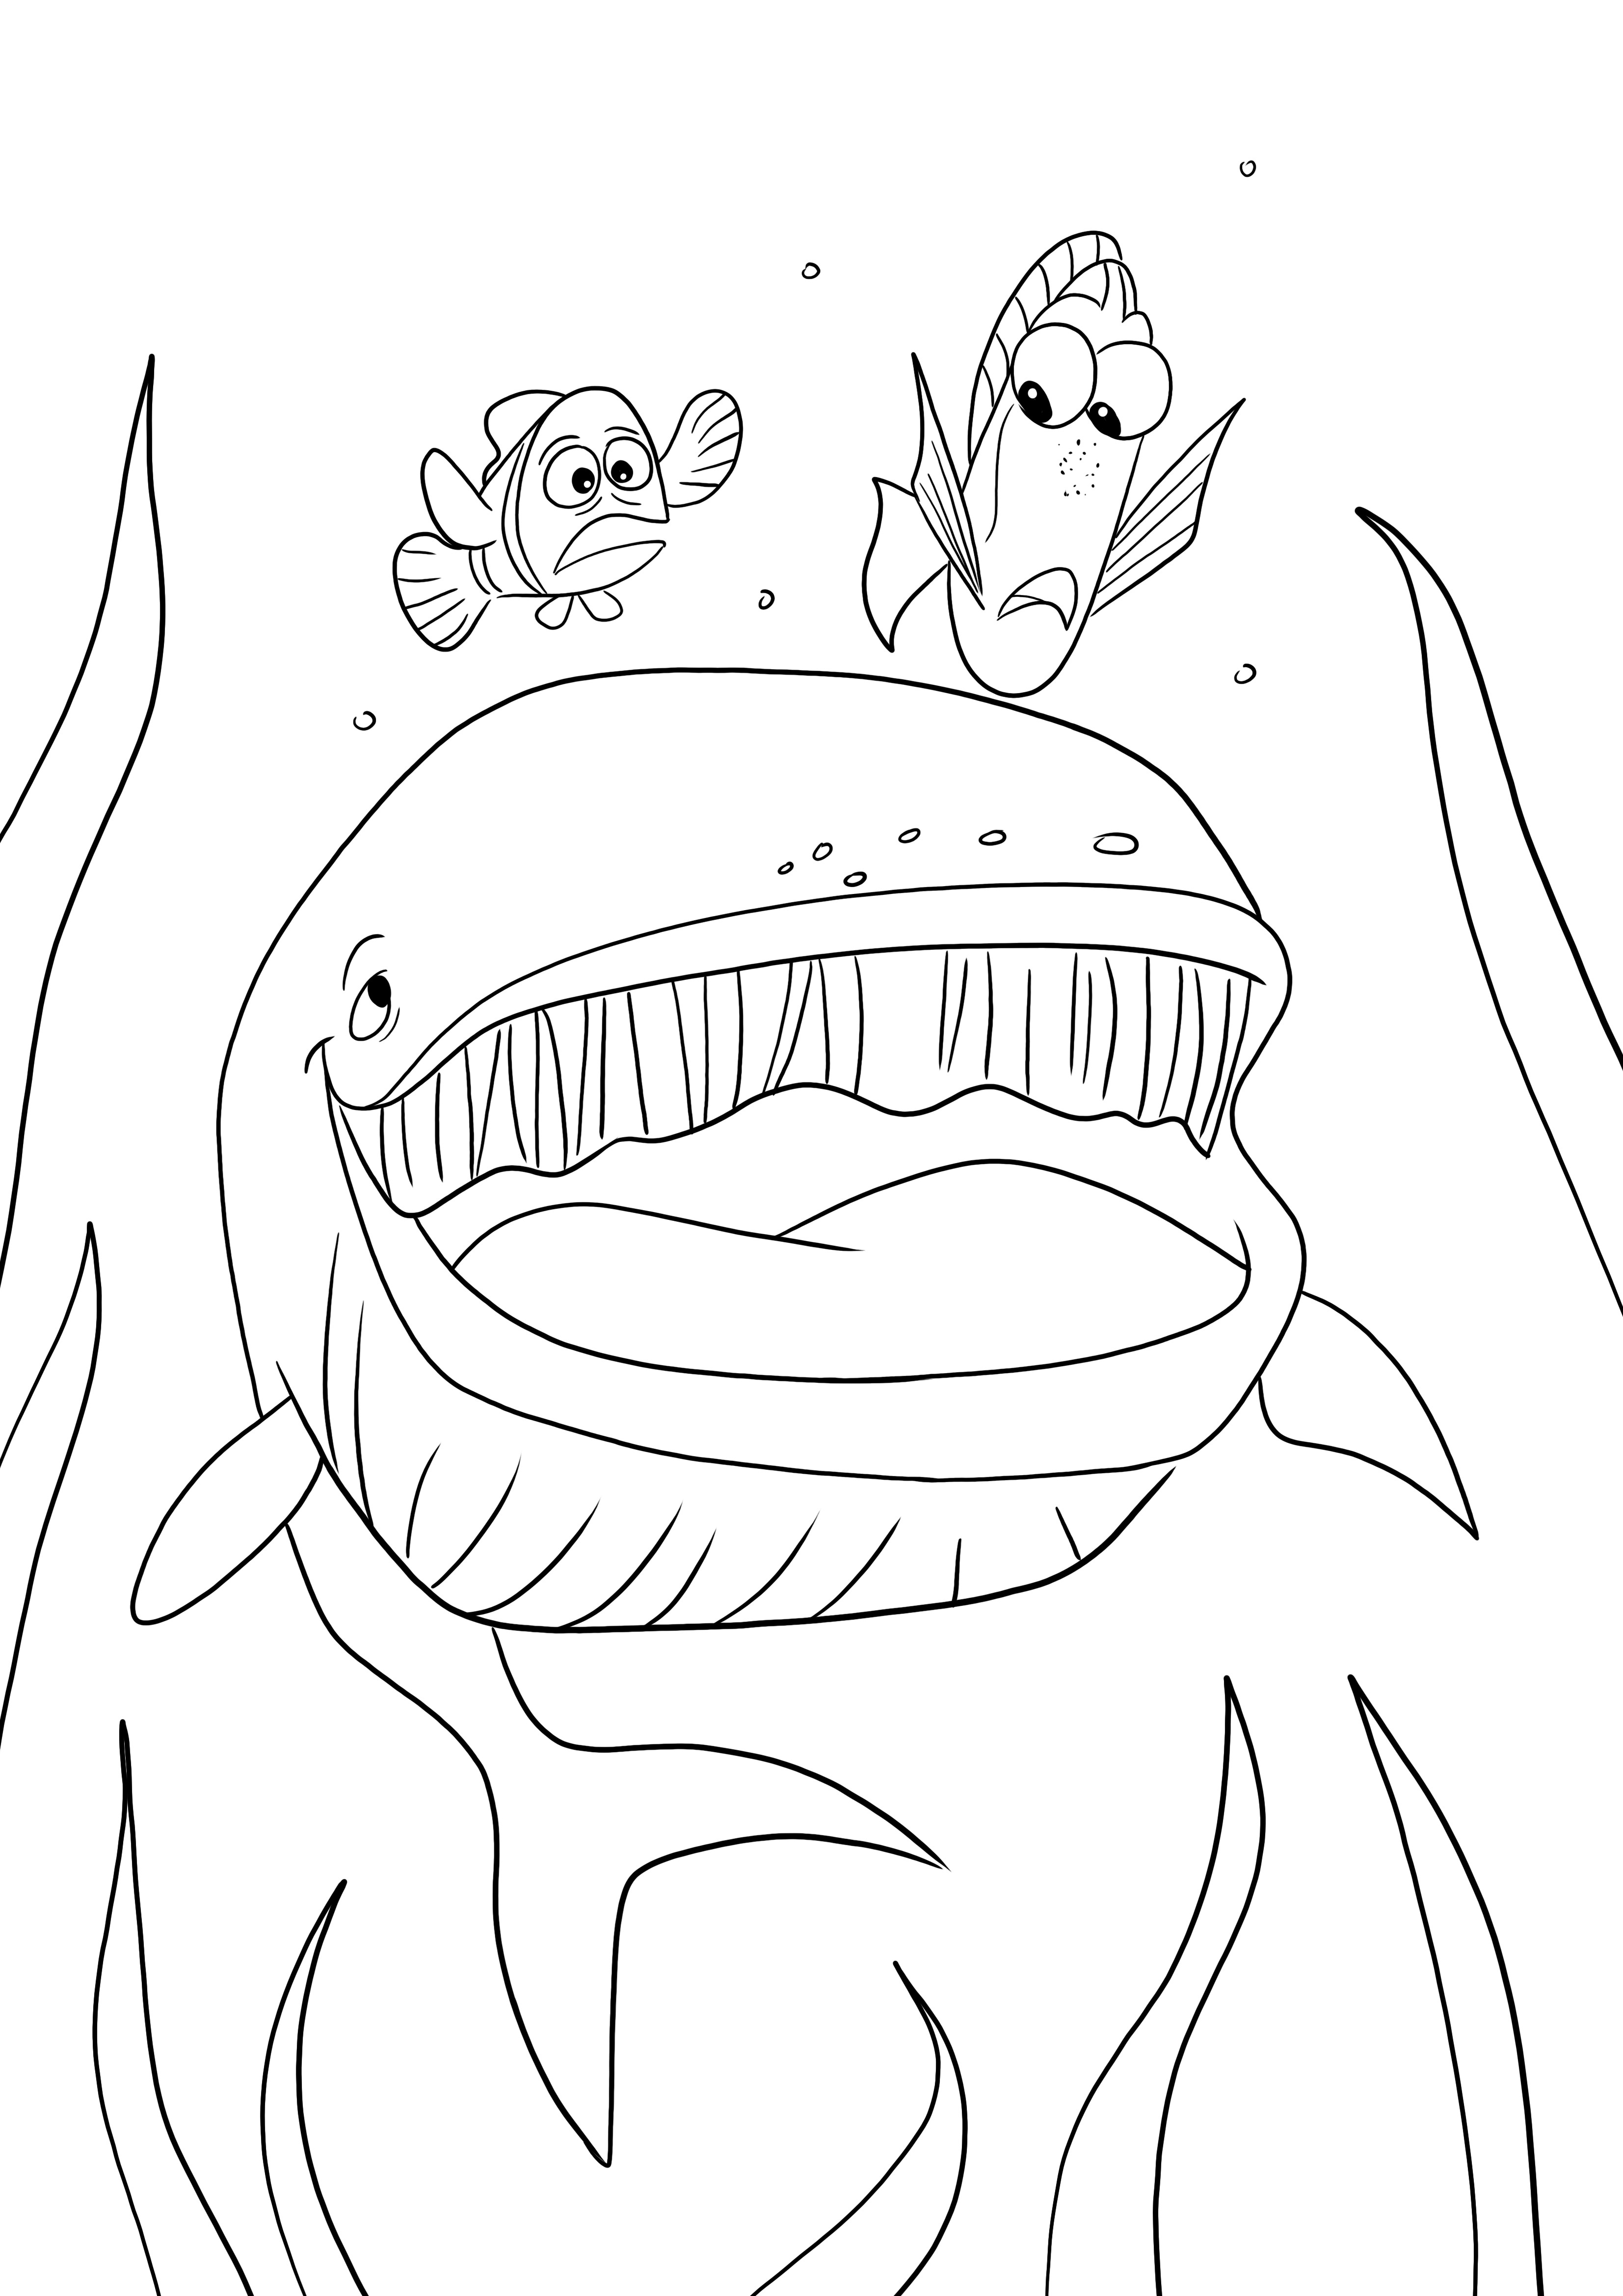 Dory -Nemo ja valas ilmaiseksi ladattavaksi tai tulostettavaksi ja väritettäväksi lapsille